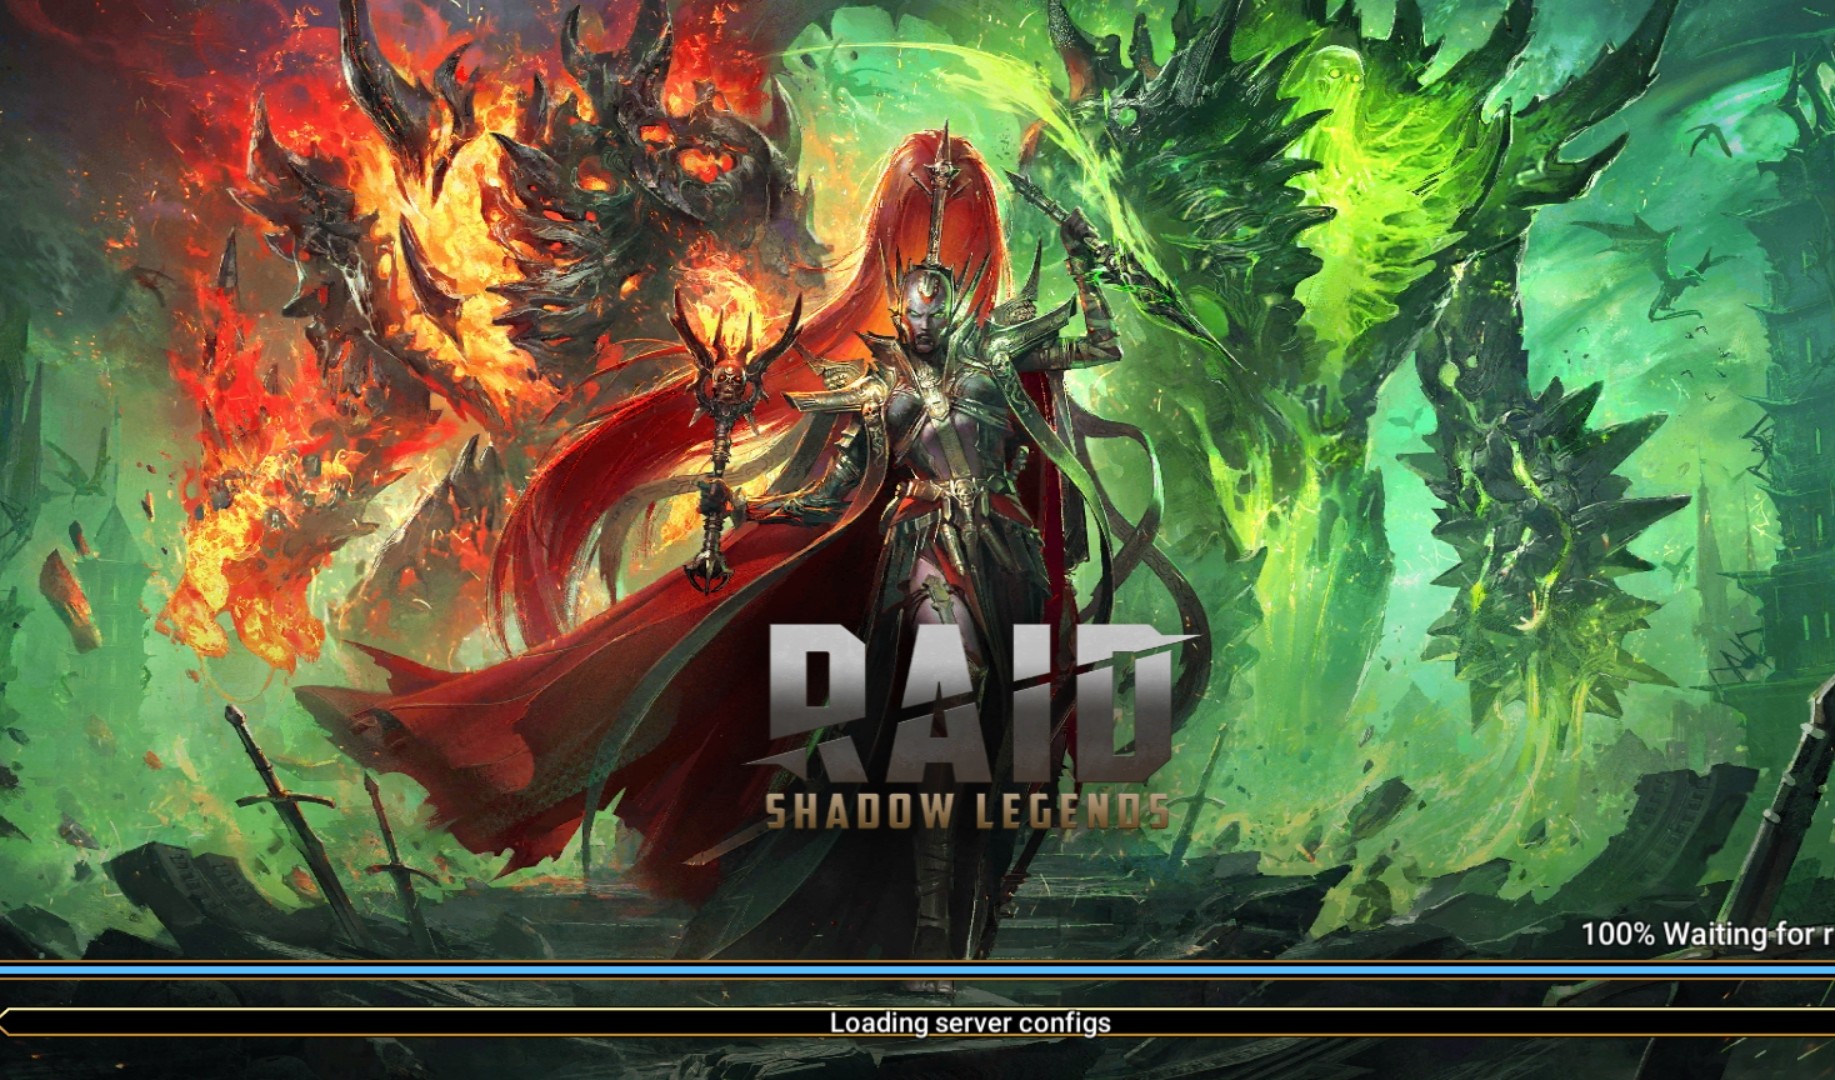 raid shadow legends mod apk unlimited everything 2021